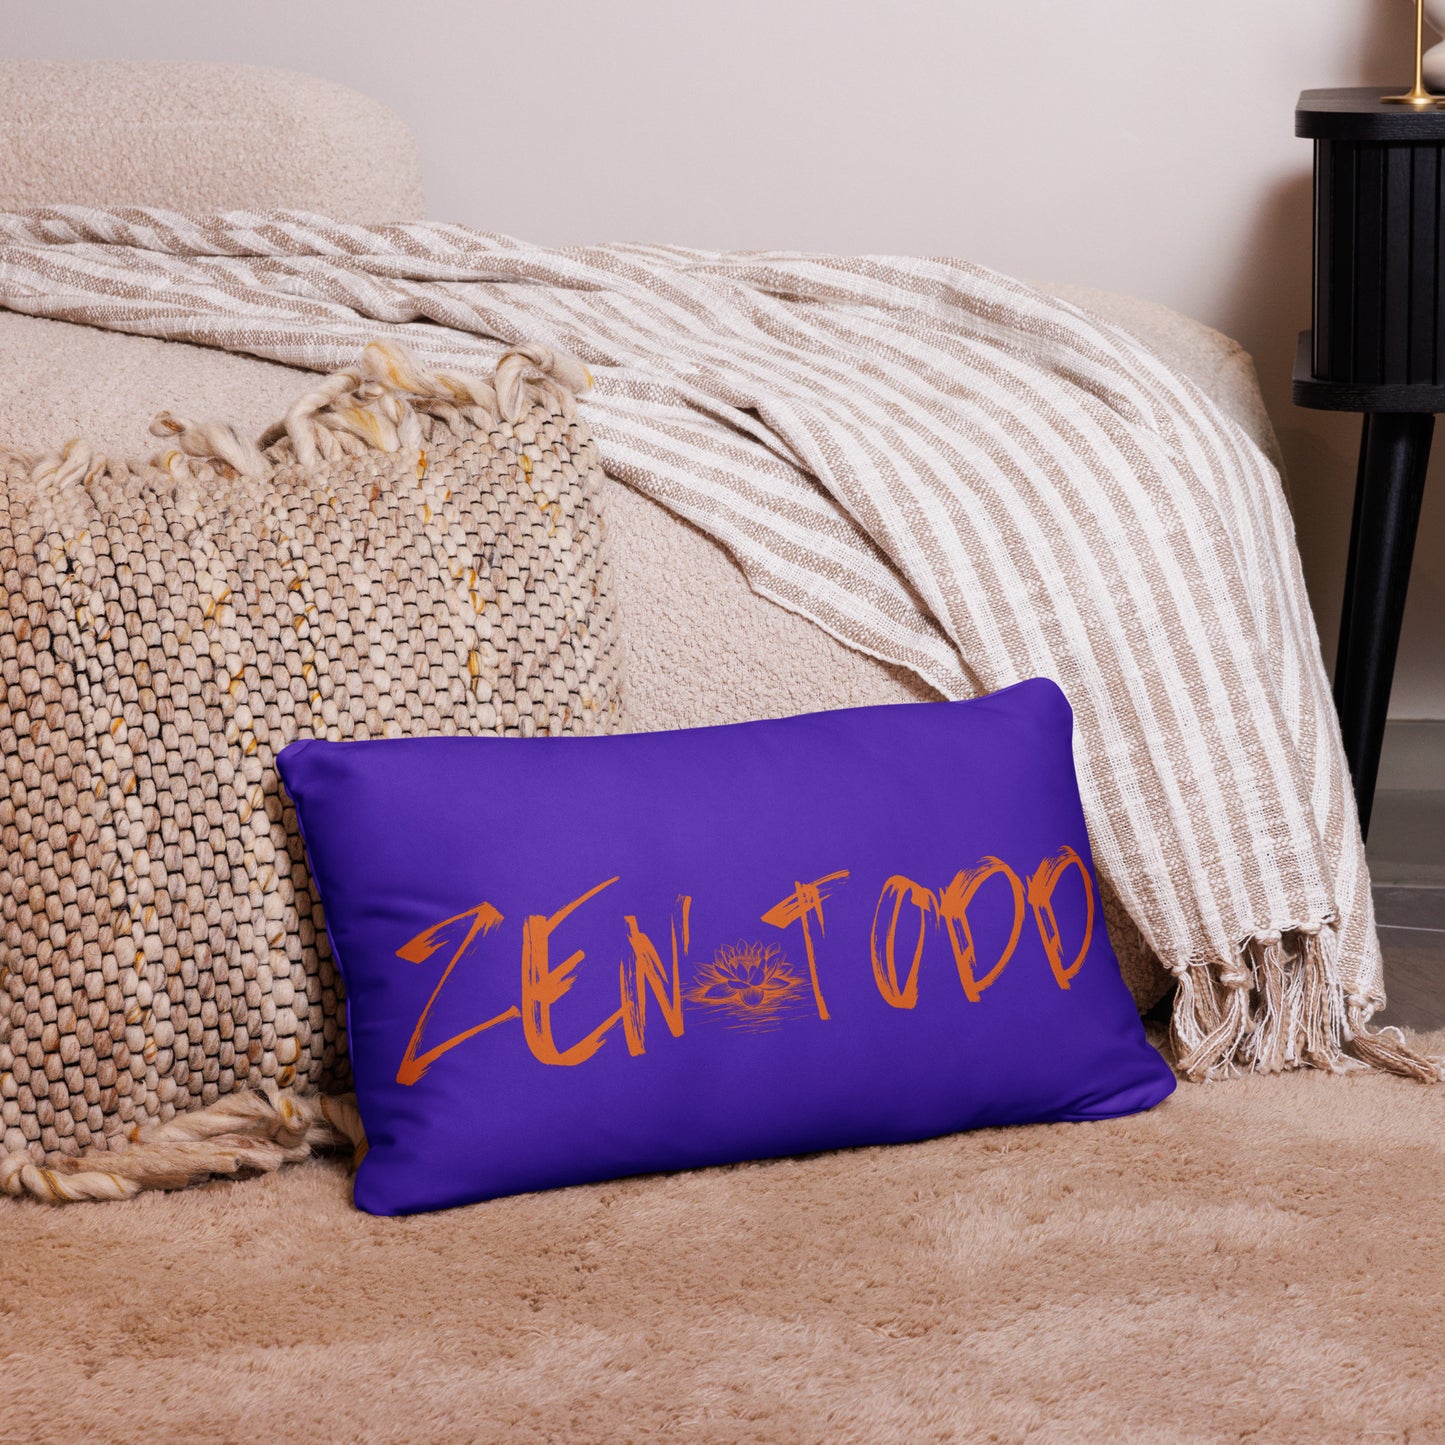 Zen Todd Basic Pillow